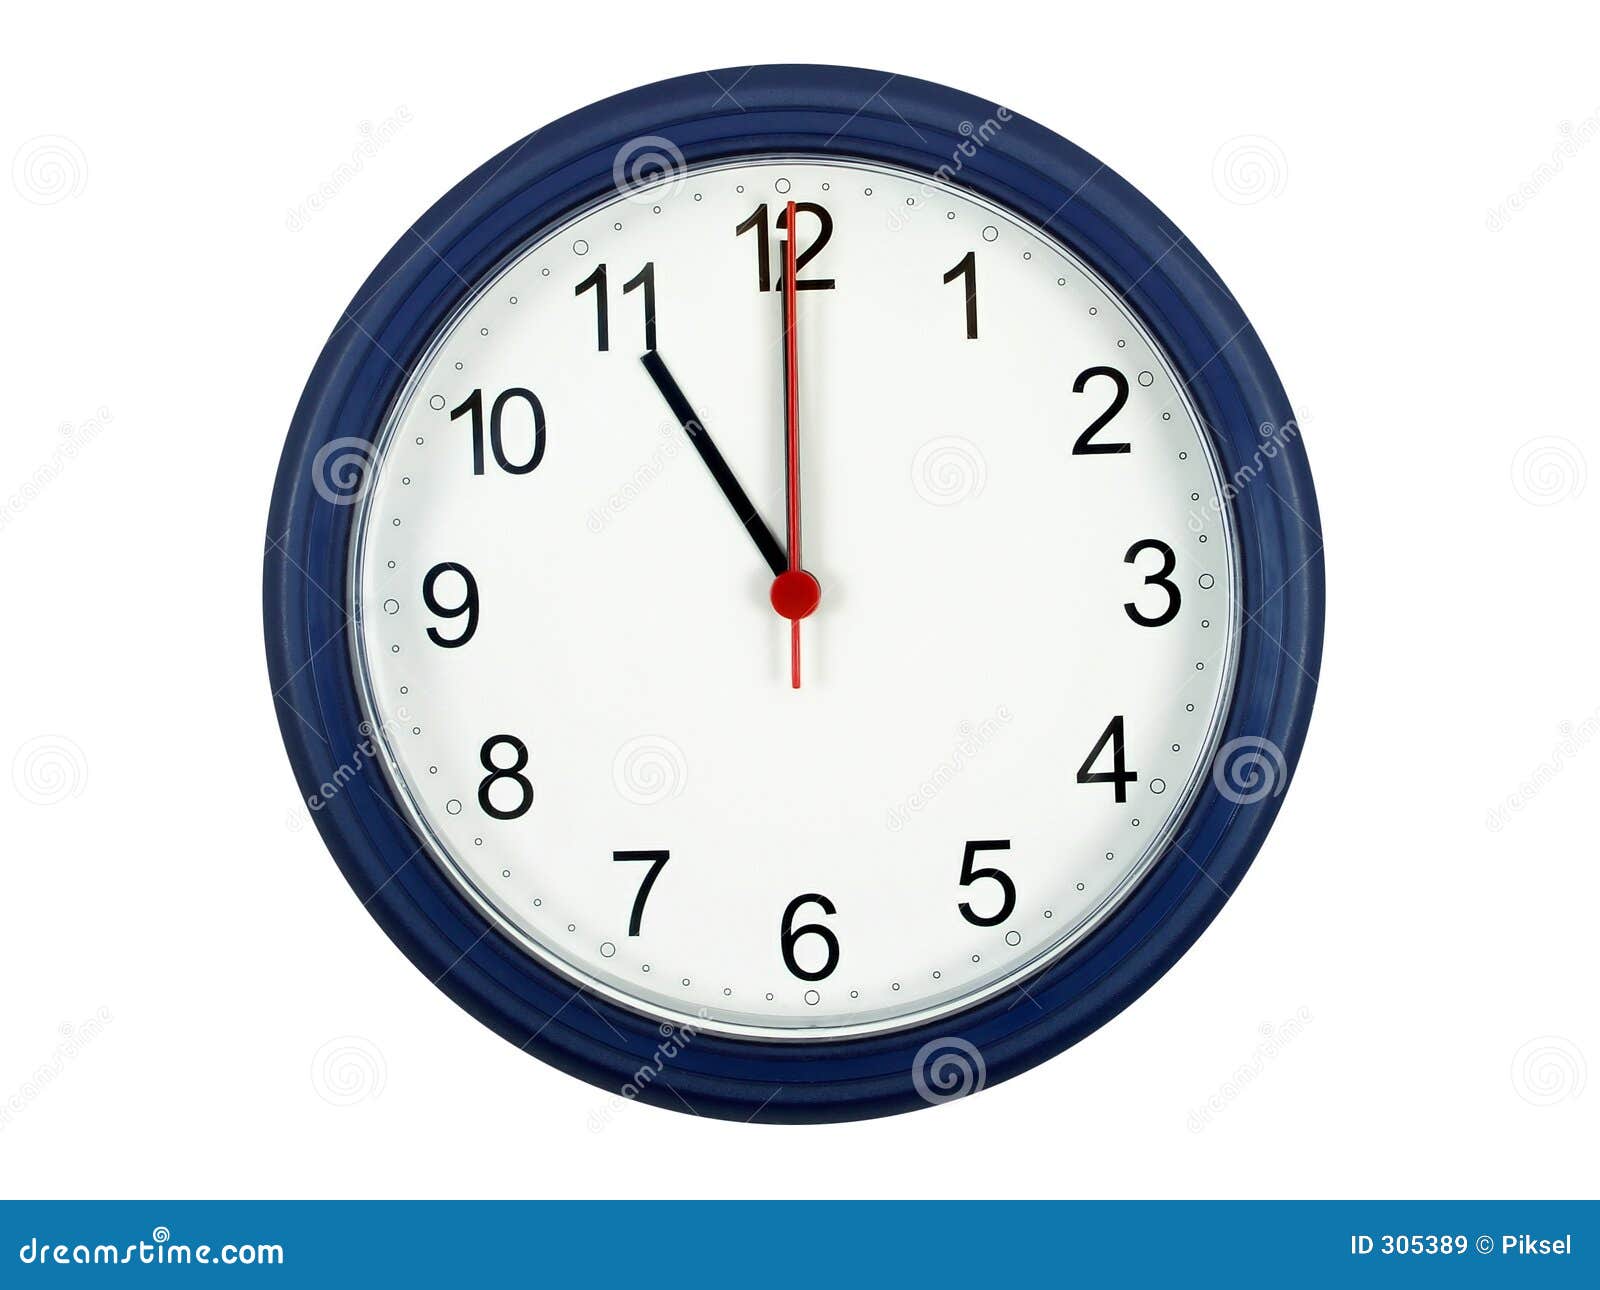 Horloge Affichant 11 Heures Image stock - Image du mesure, affaires: 305389